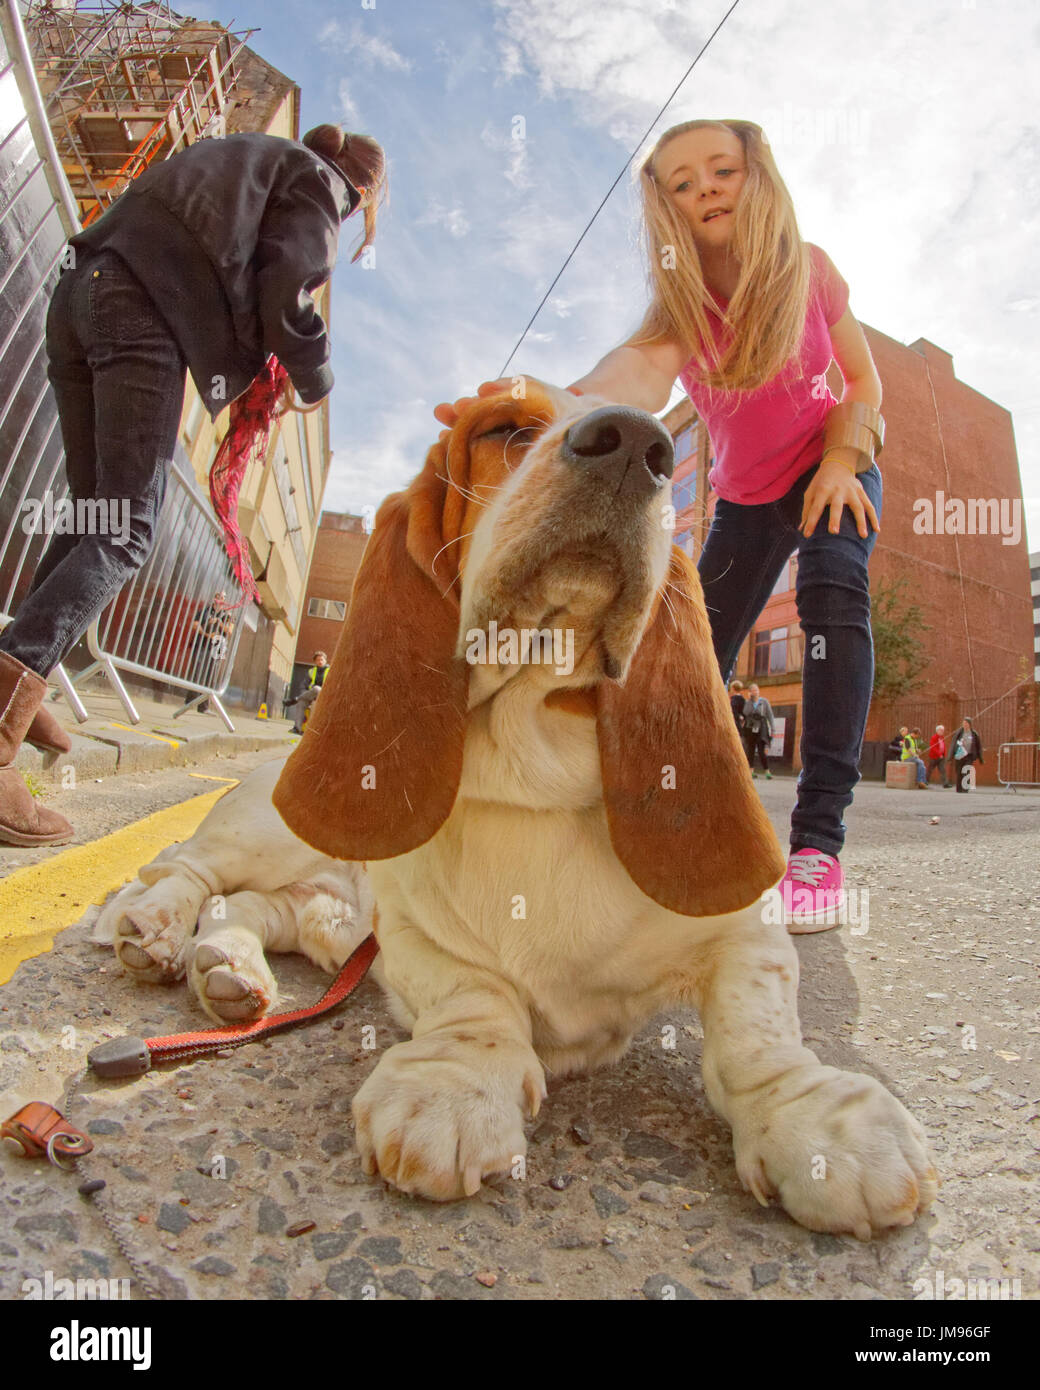 Merchant City Festival Szenen Basset Hound, Hush Puppy.bloodhound Typ Hund und Besitzer auf Leine kleine Mädchen Petting Hund Haare spiegeln Hunde Ohren Stockfoto